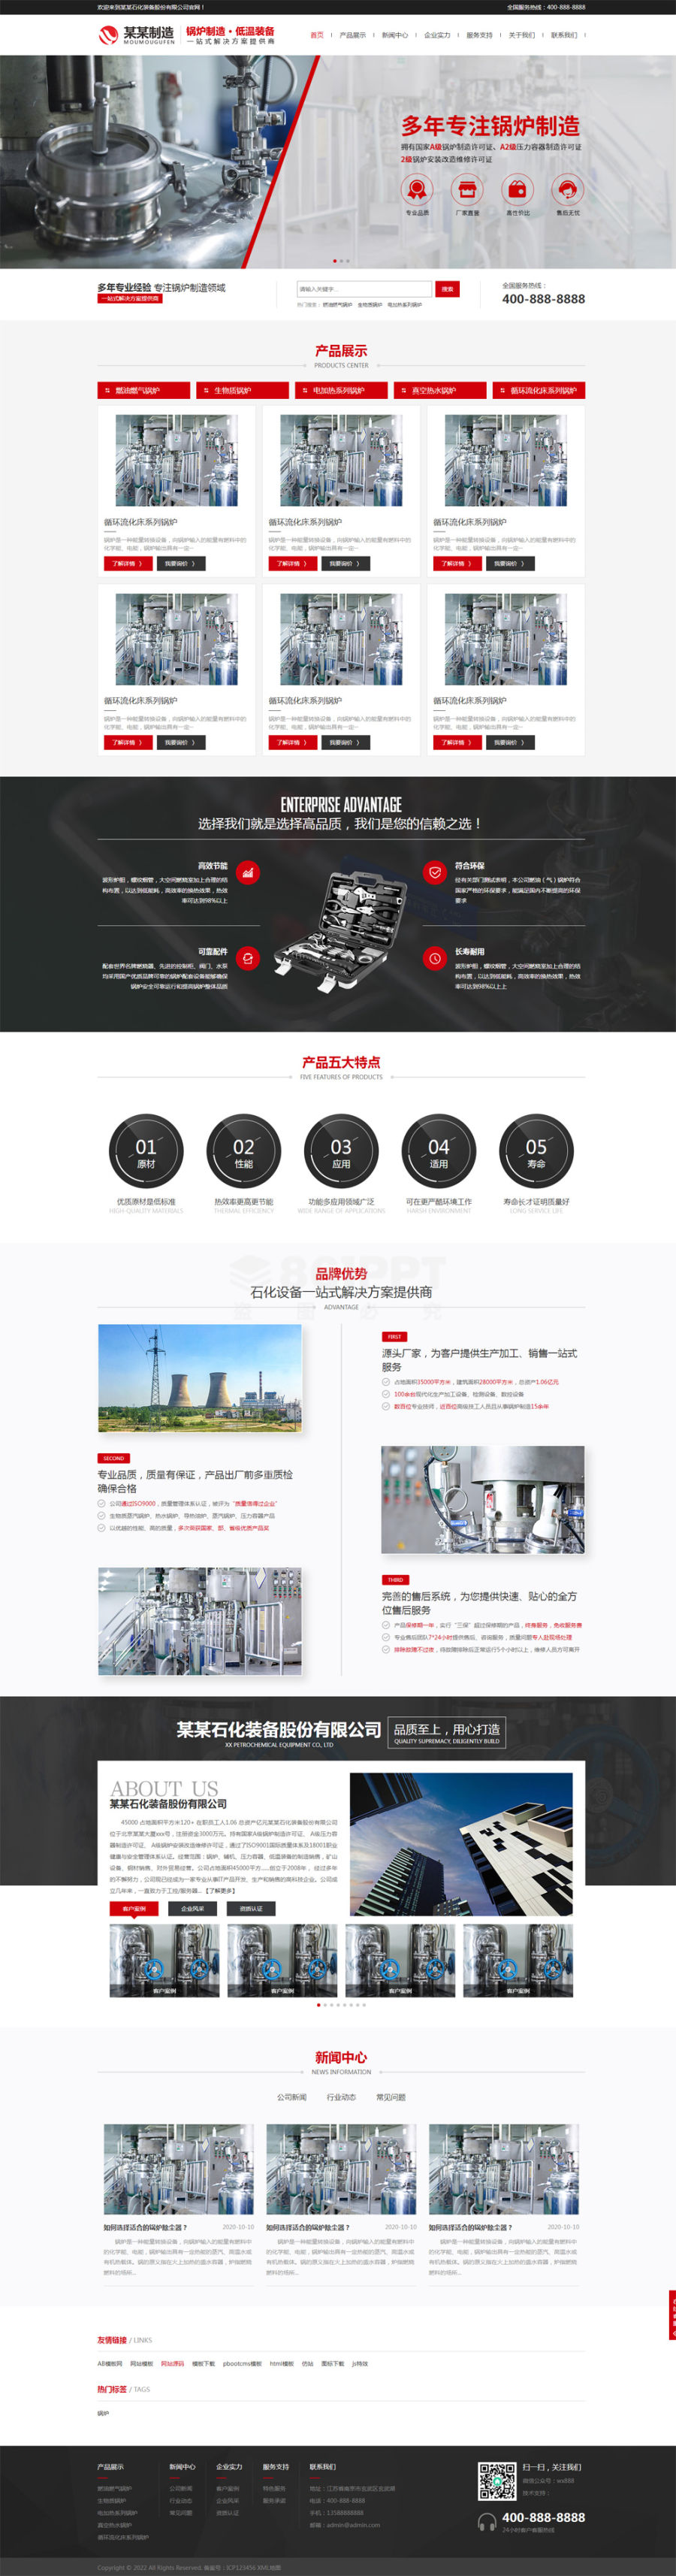 红色的石化设备锅炉制造公司简介网站源码